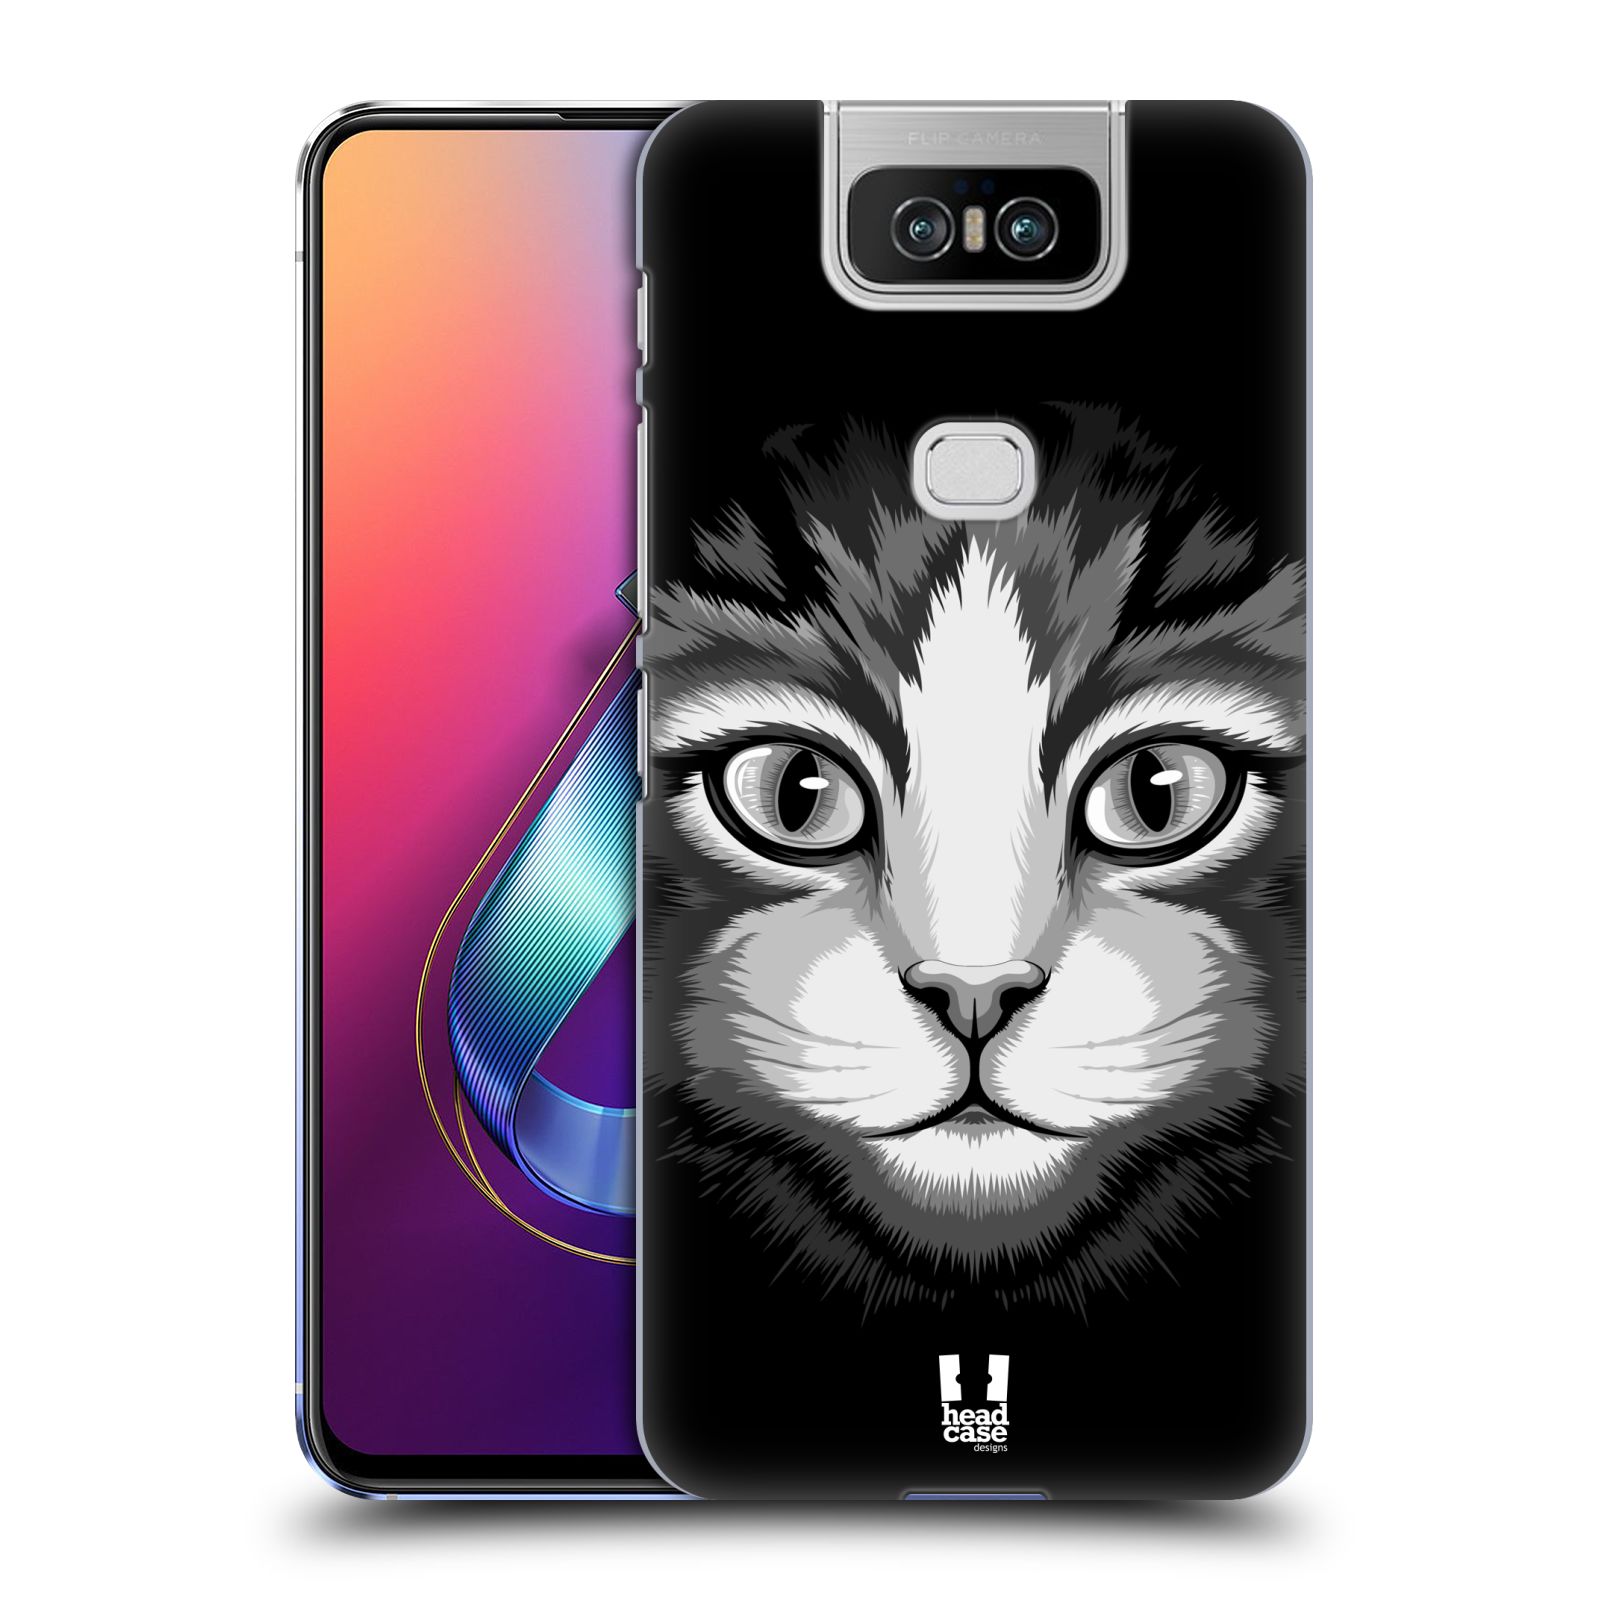 Pouzdro na mobil Asus Zenfone 6 ZS630KL - HEAD CASE - vzor Zvíře kreslená tvář 2 kočička